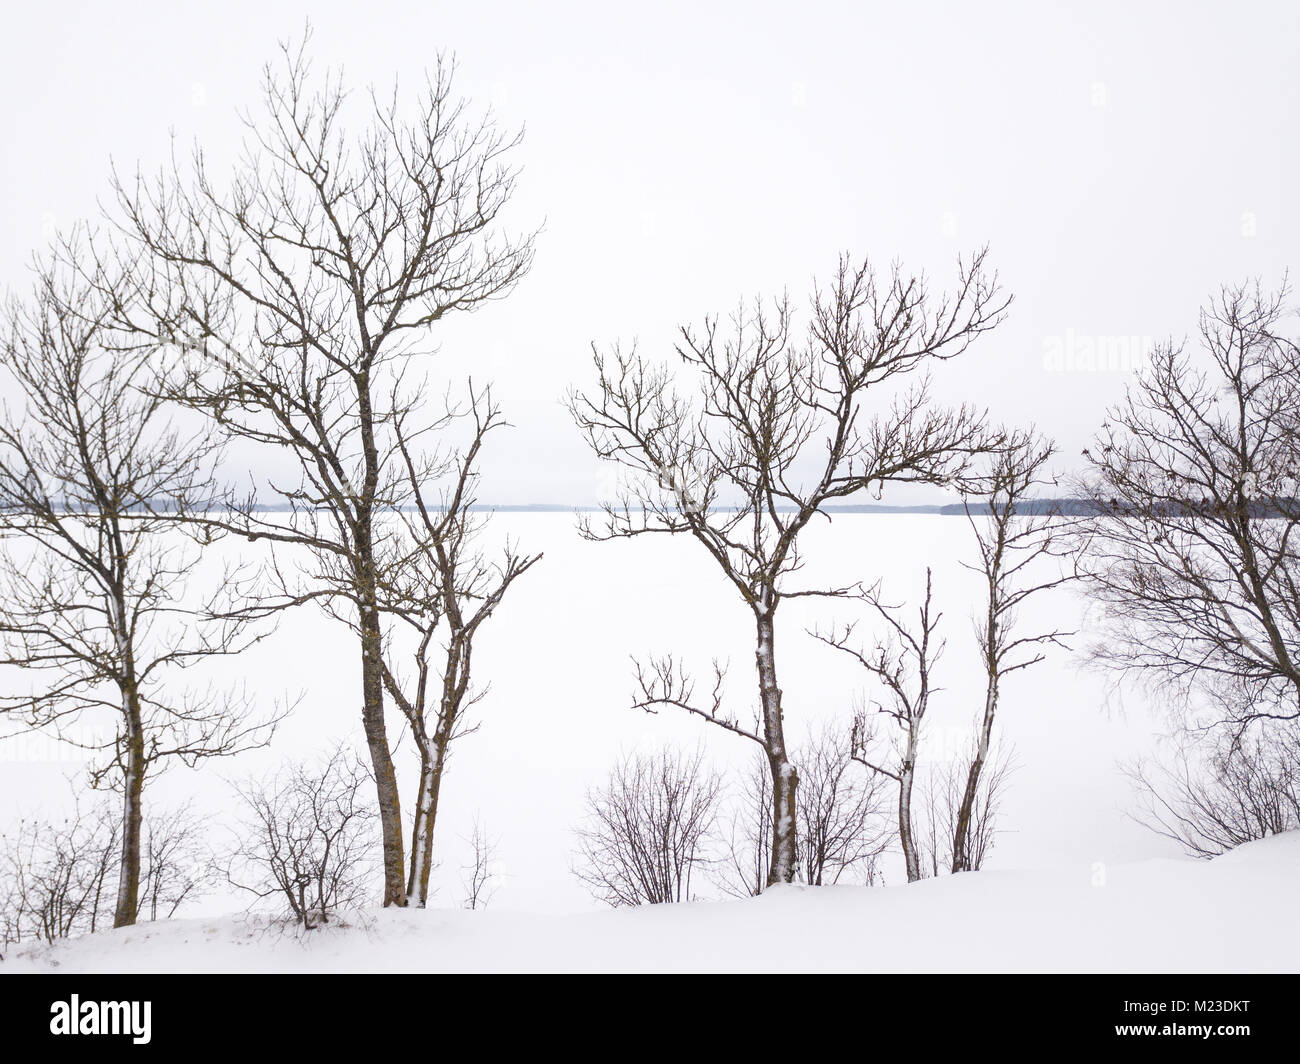 Einfaches Bild von Bäumen vor einem zugefrorenen See. Tartu, Estland. Stockfoto